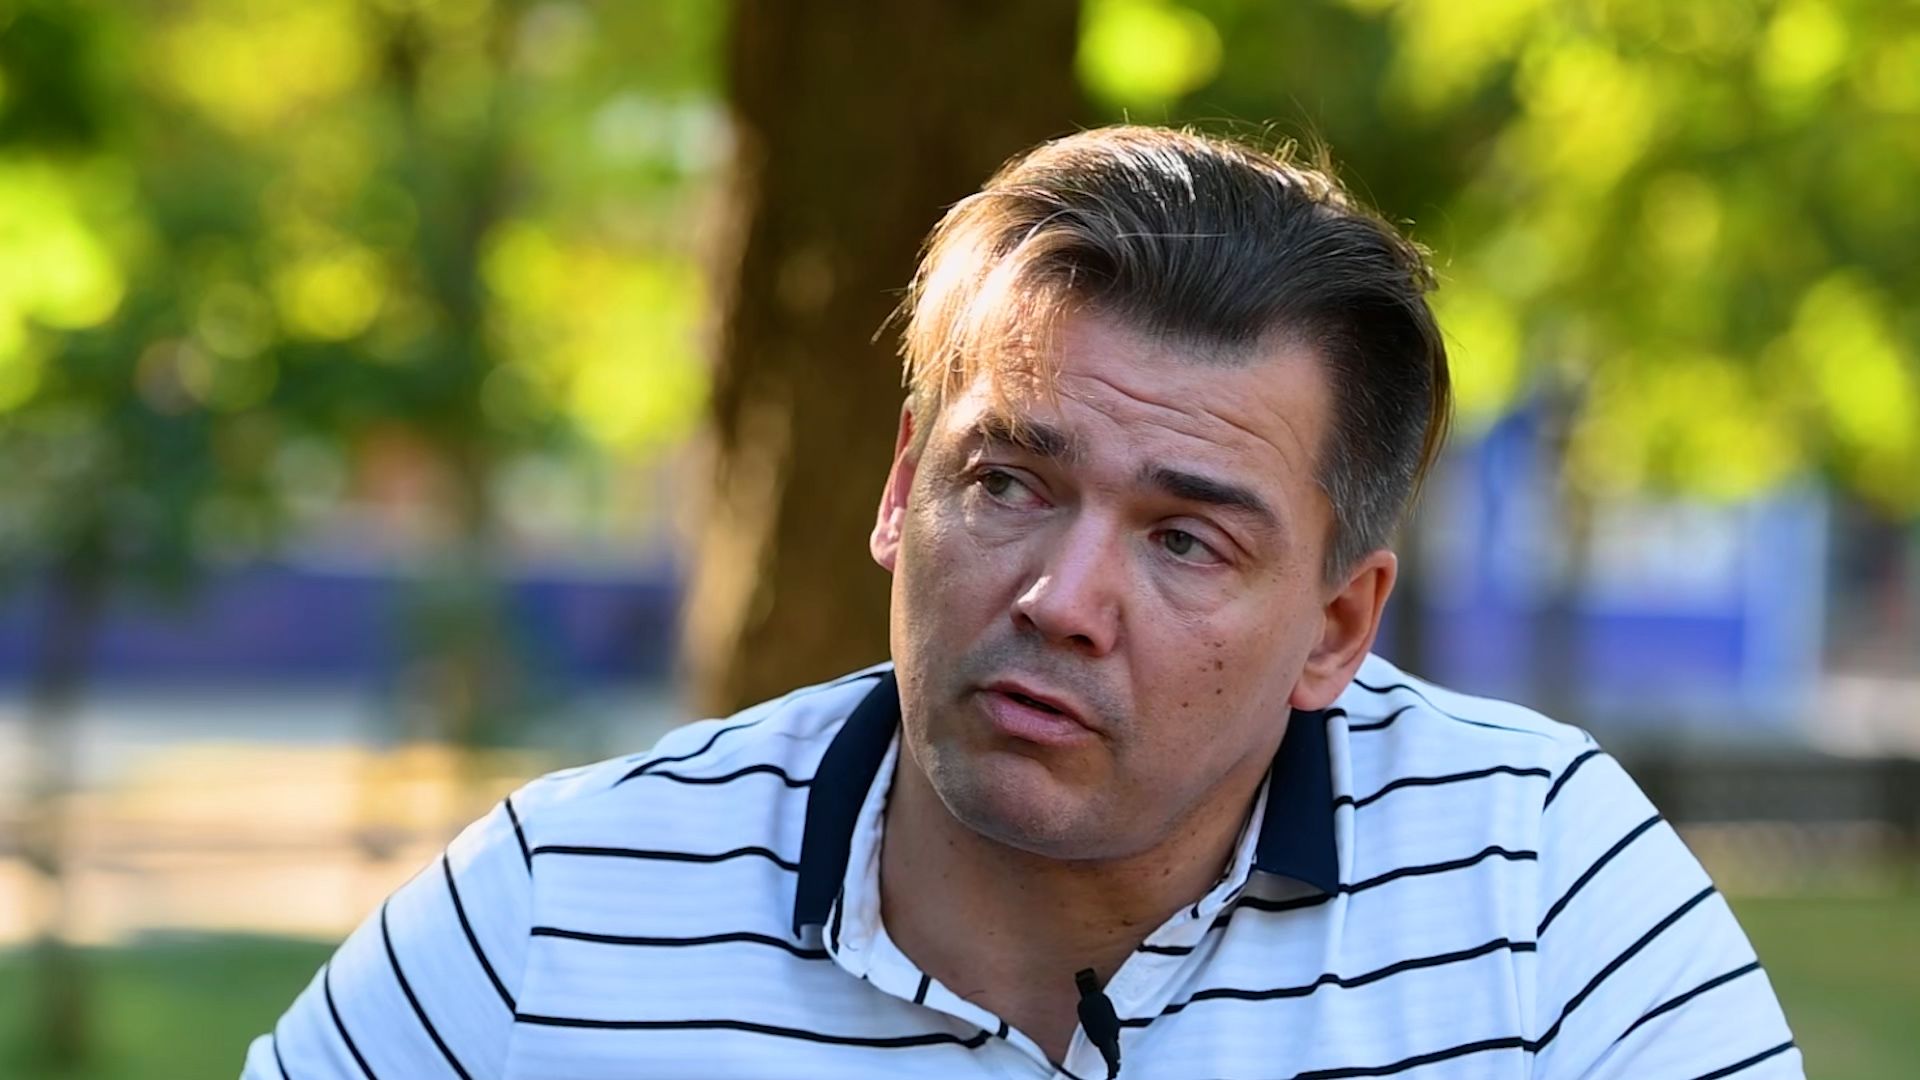 Иностранные журналисты в Донбассе: «Мы не можем вернуться на родину, нас ждет тюрьма» Видео,Репортажи,ФАН-ТВ